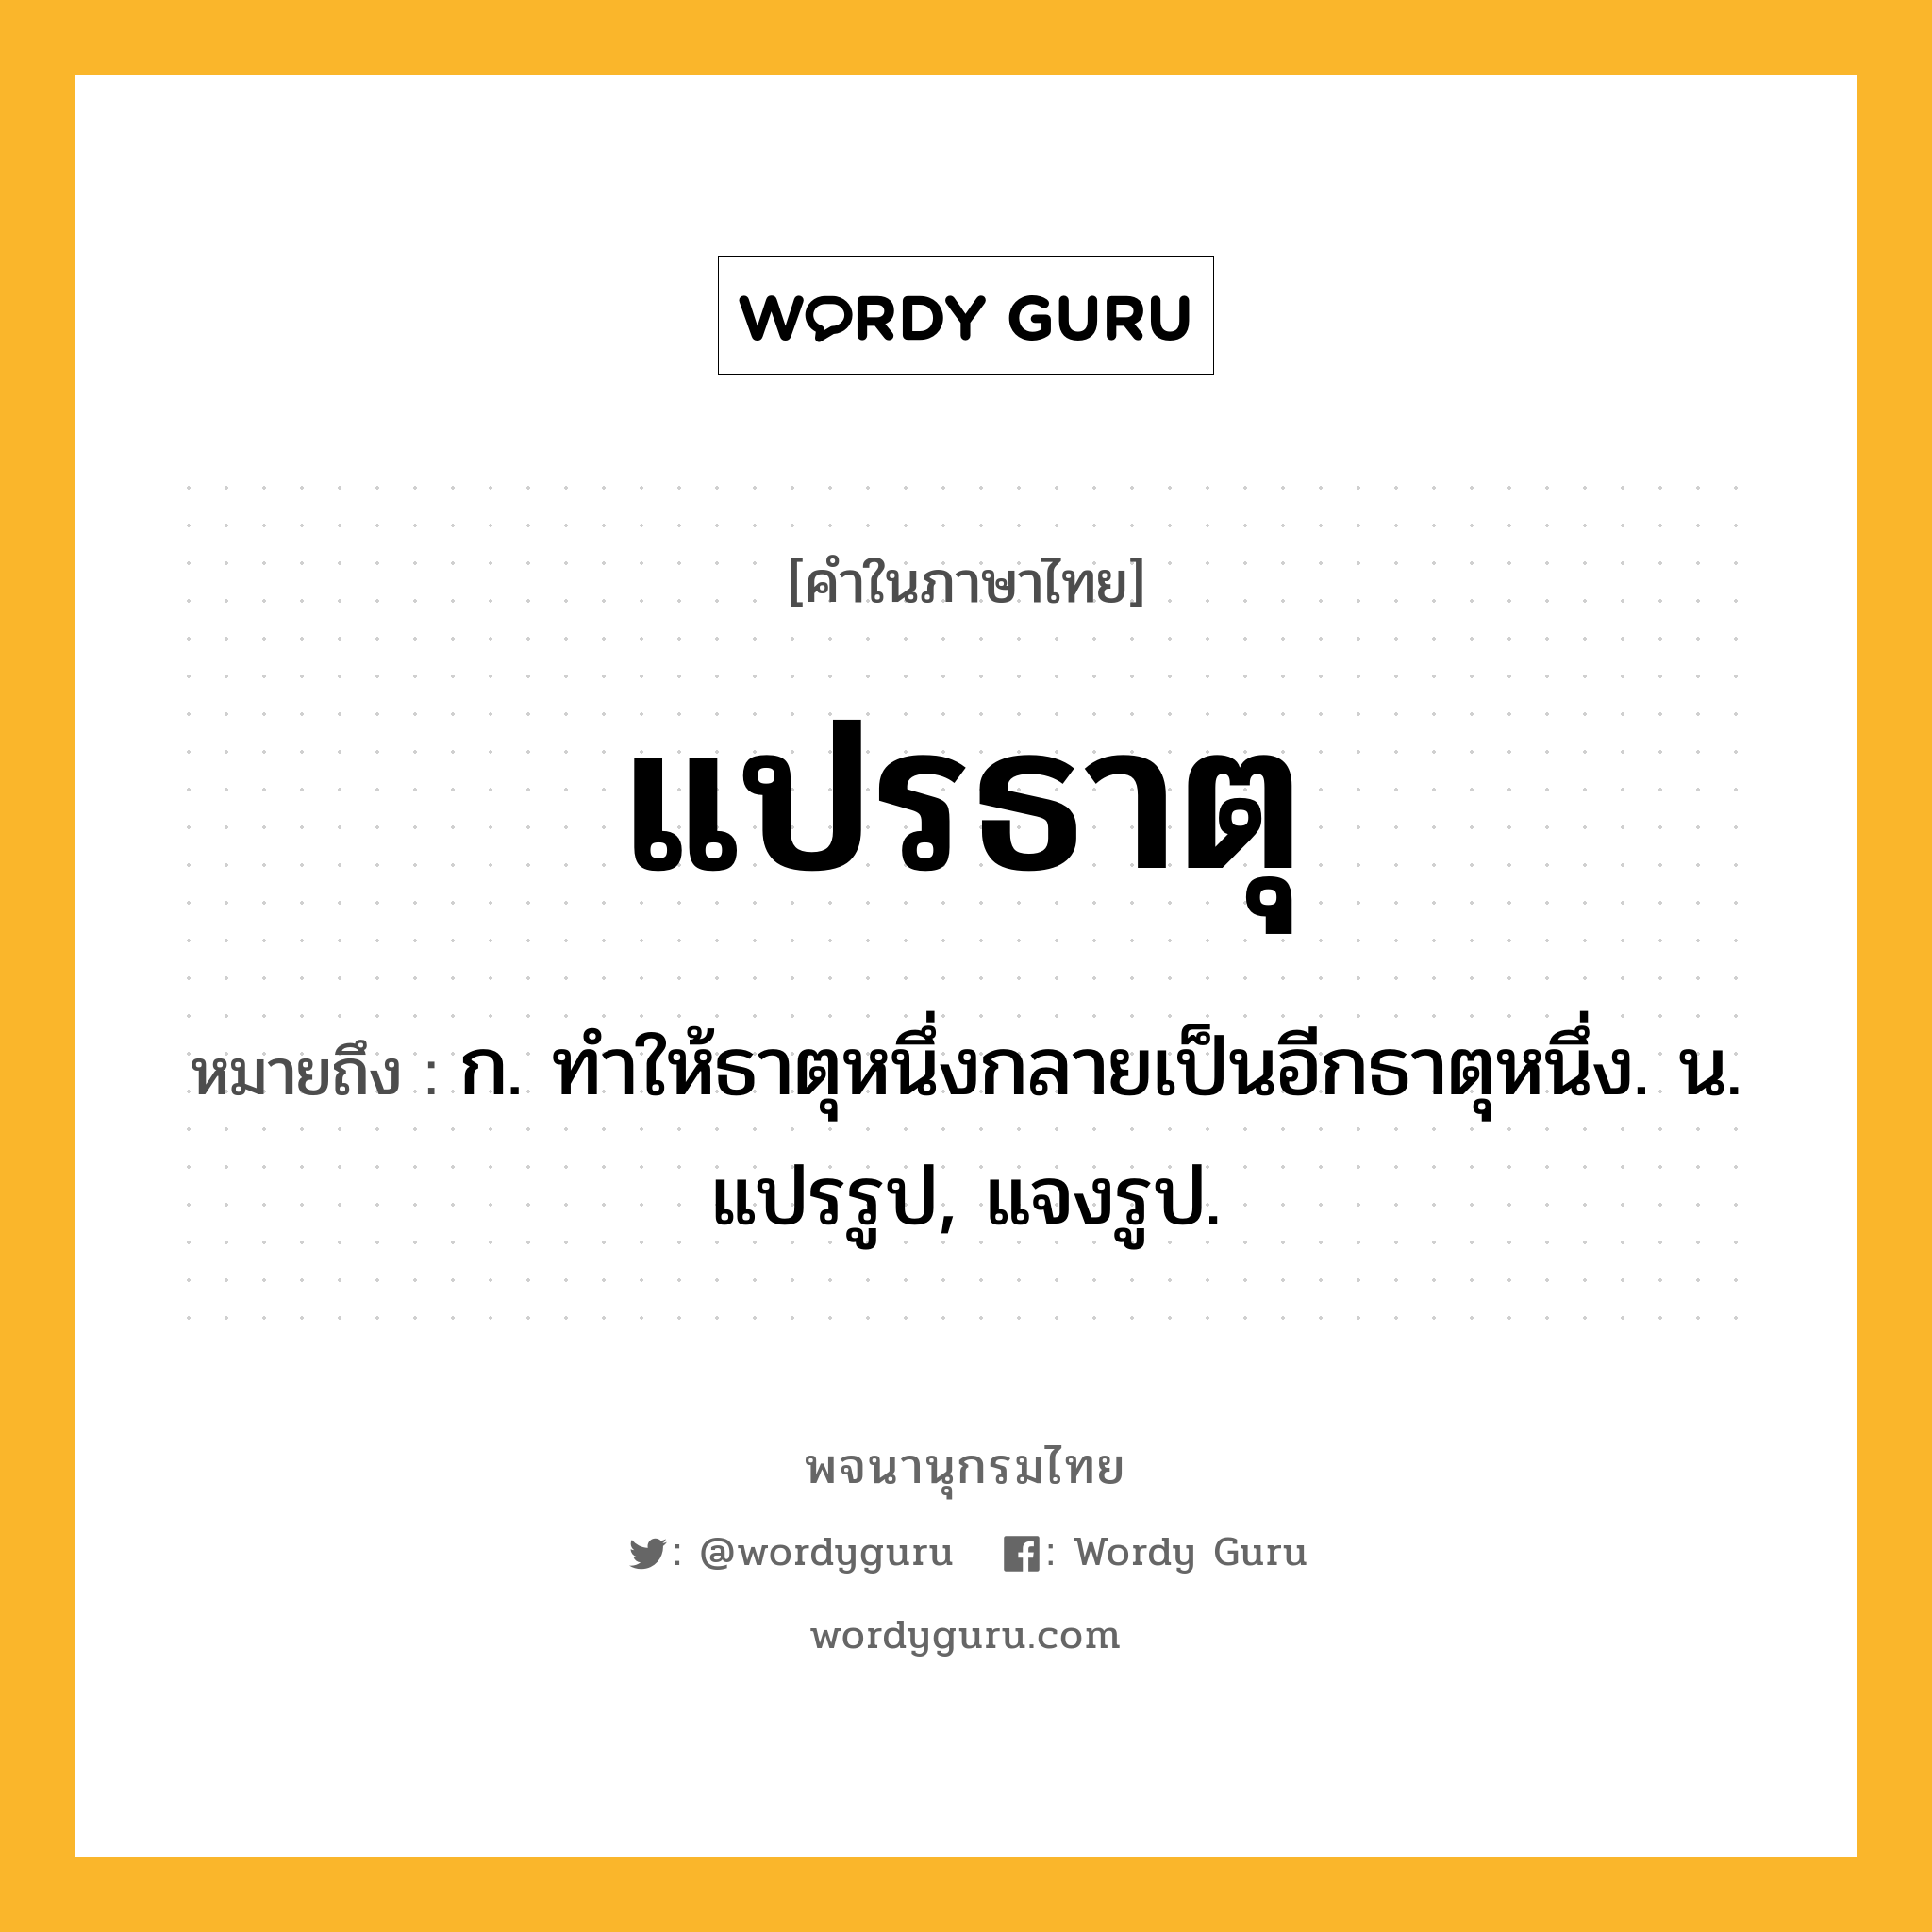 แปรธาตุ ความหมาย หมายถึงอะไร?, คำในภาษาไทย แปรธาตุ หมายถึง ก. ทําให้ธาตุหนึ่งกลายเป็นอีกธาตุหนึ่ง. น. แปรรูป, แจงรูป.